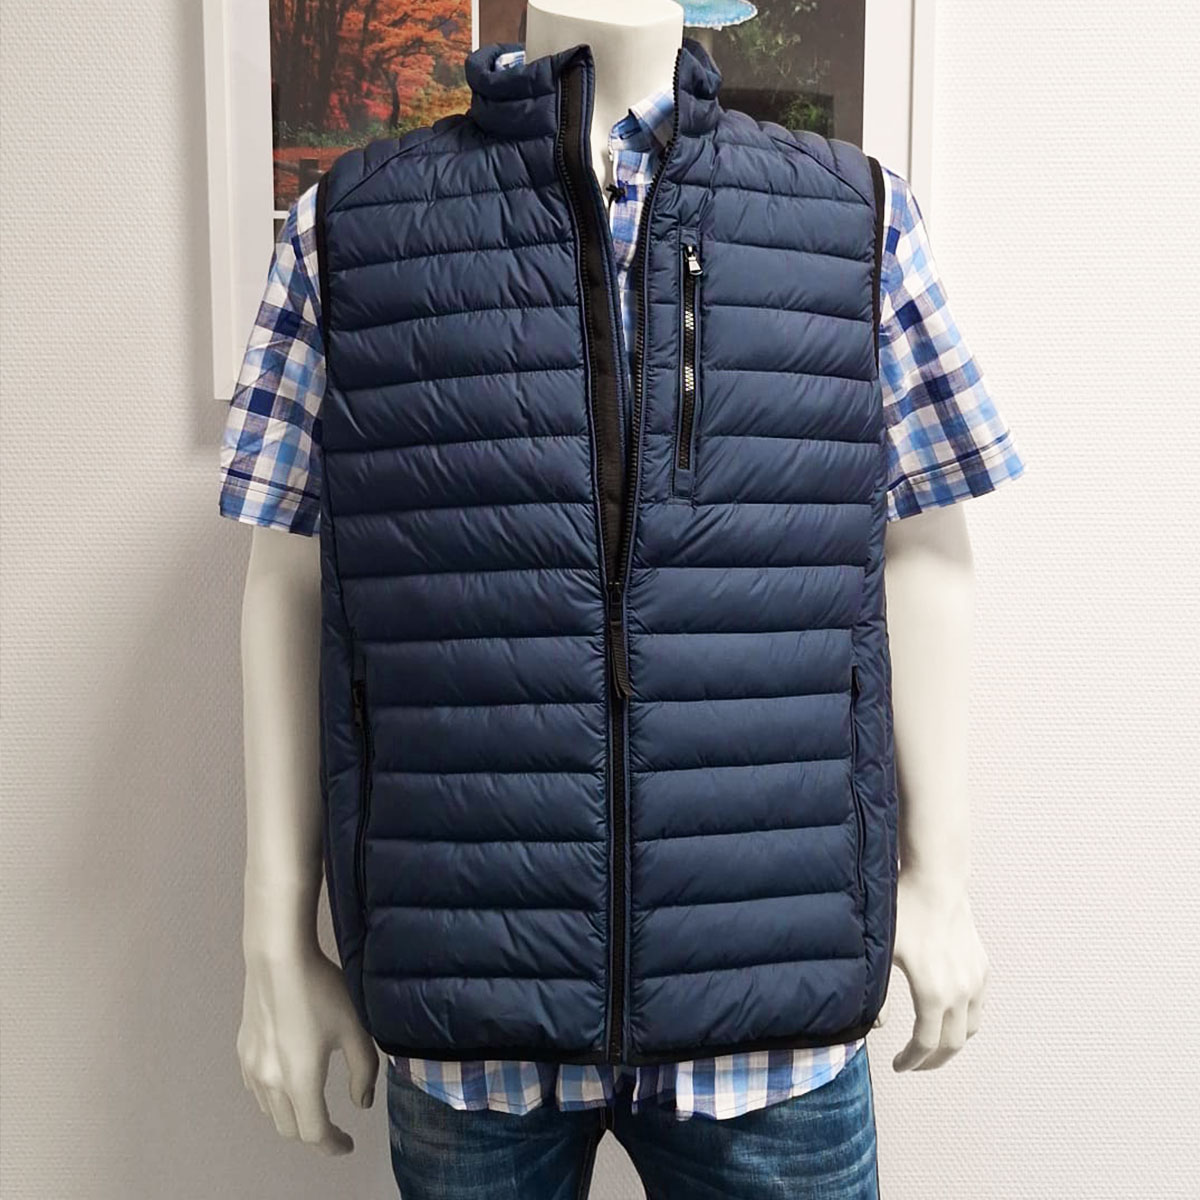 Shirt & More Trade GmbH I Products I Jackets & waistcoats